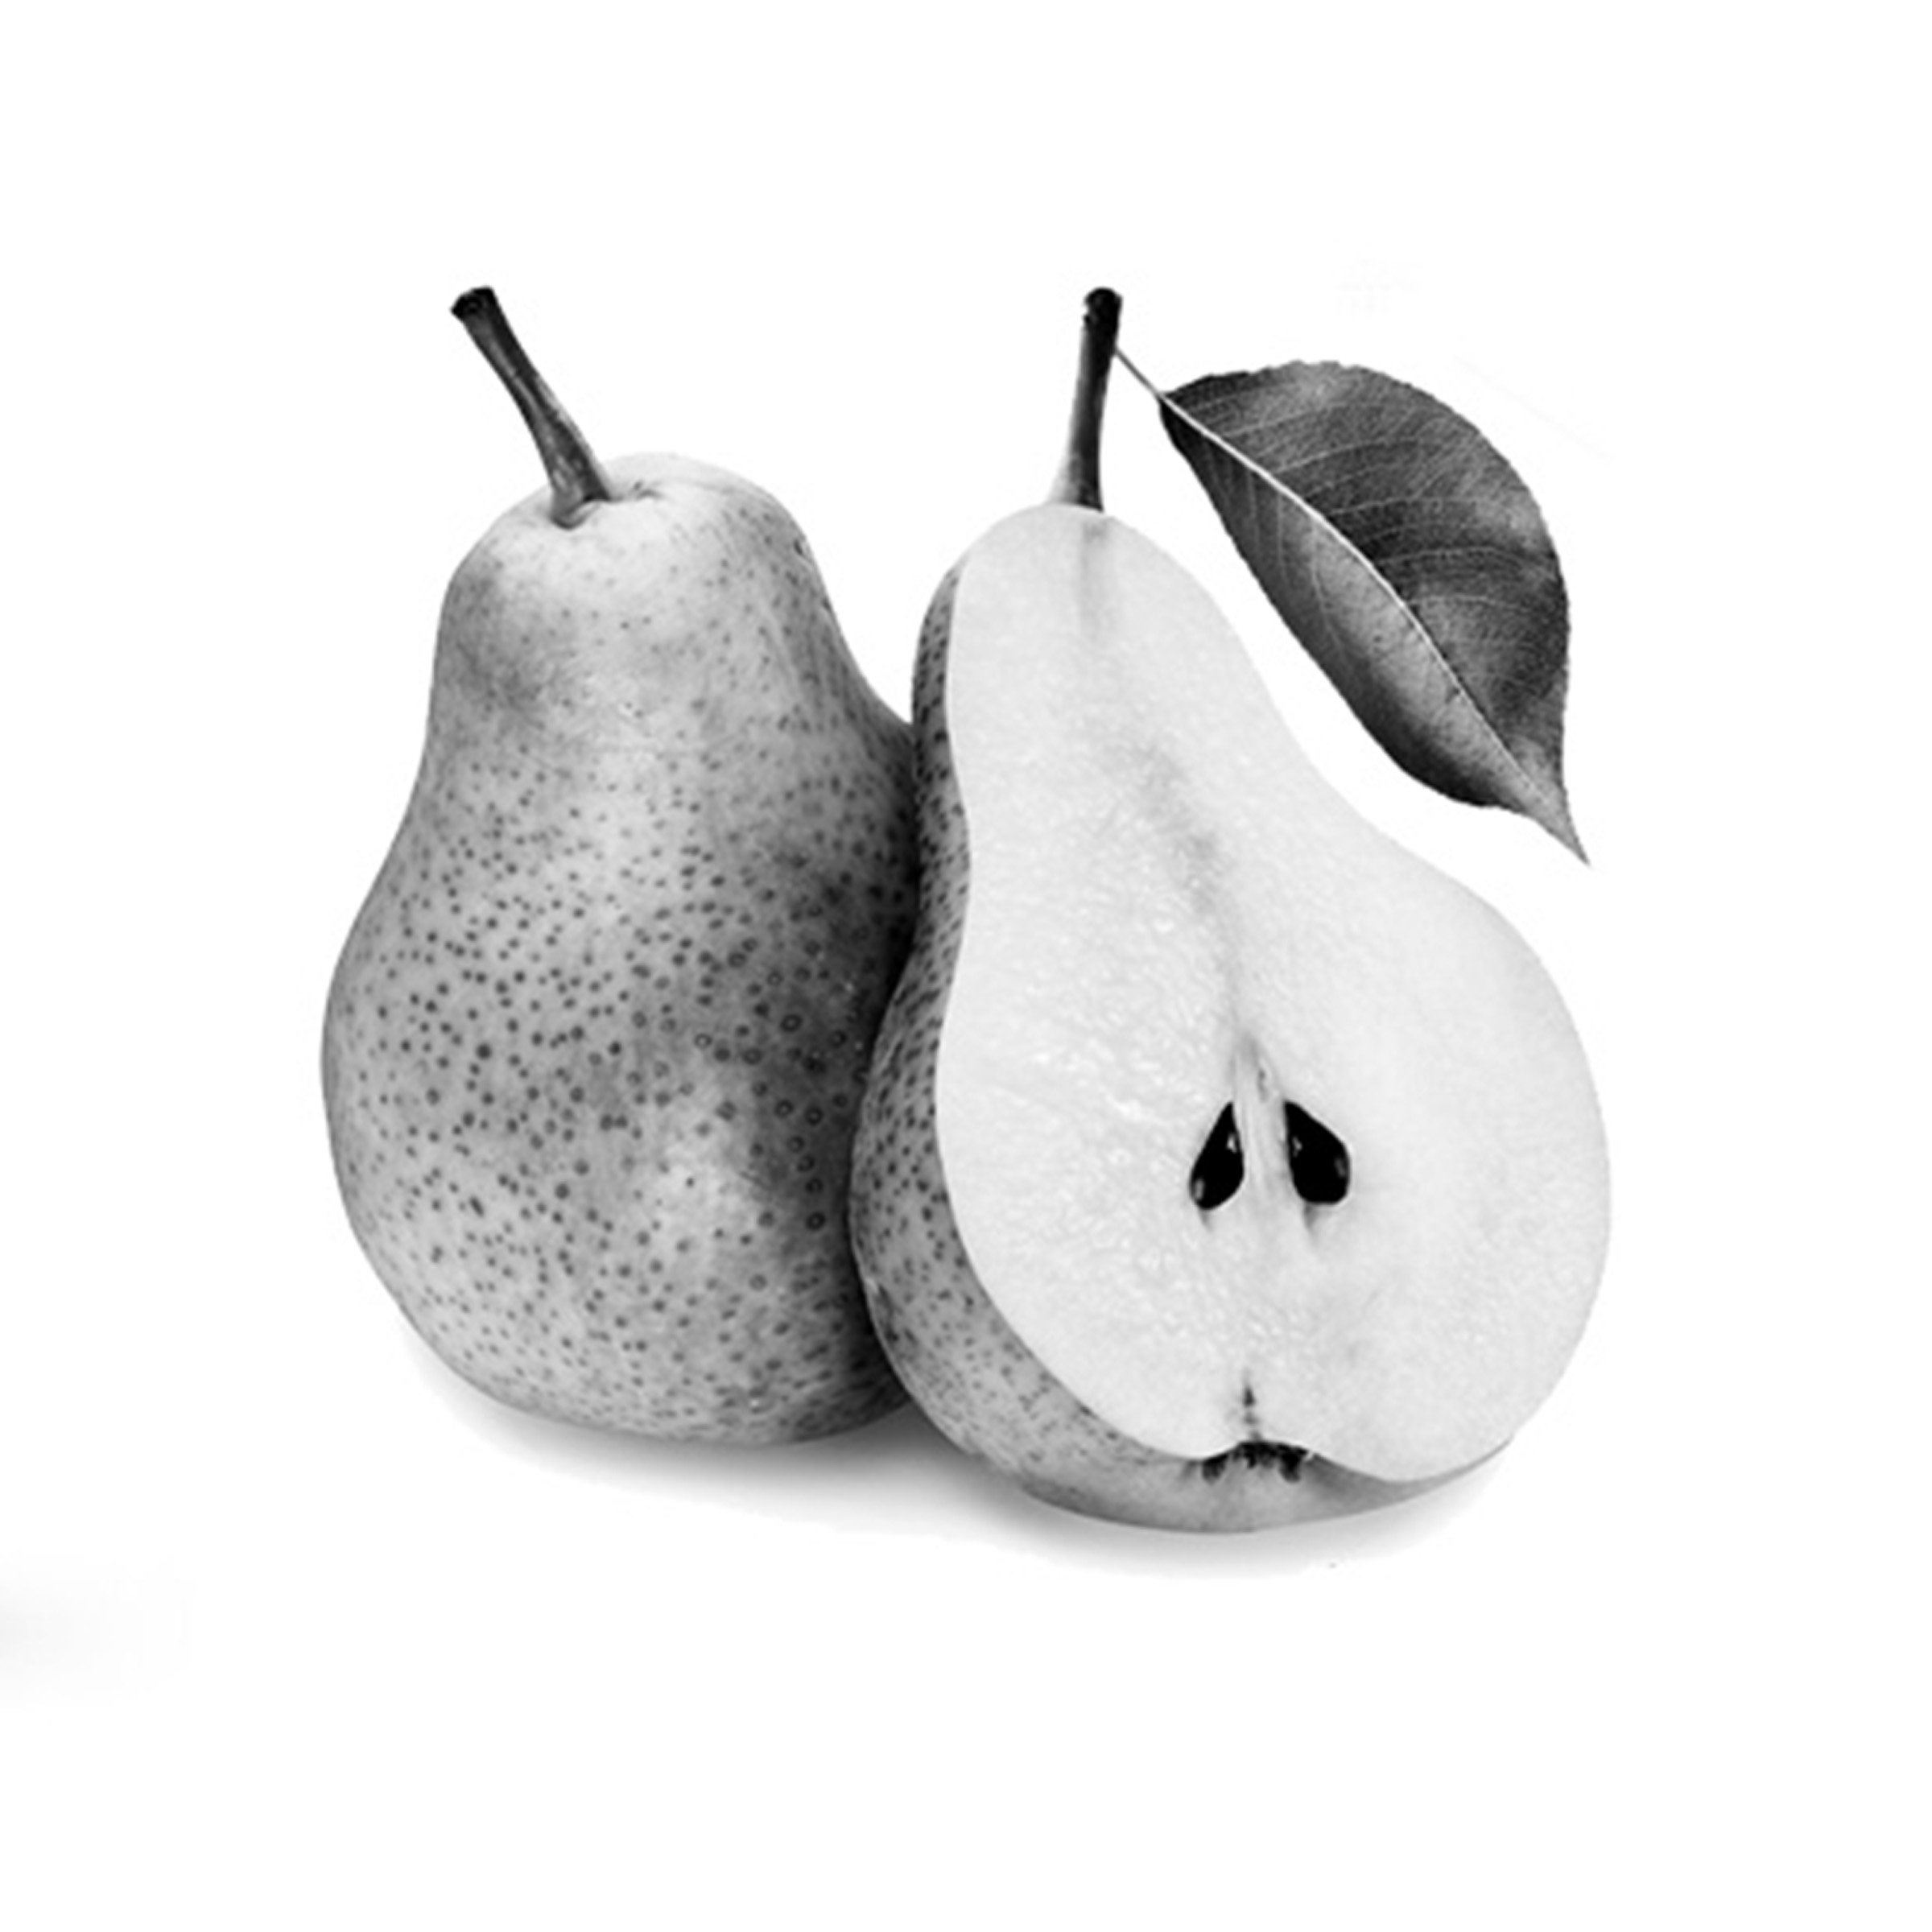 pears1.jpg